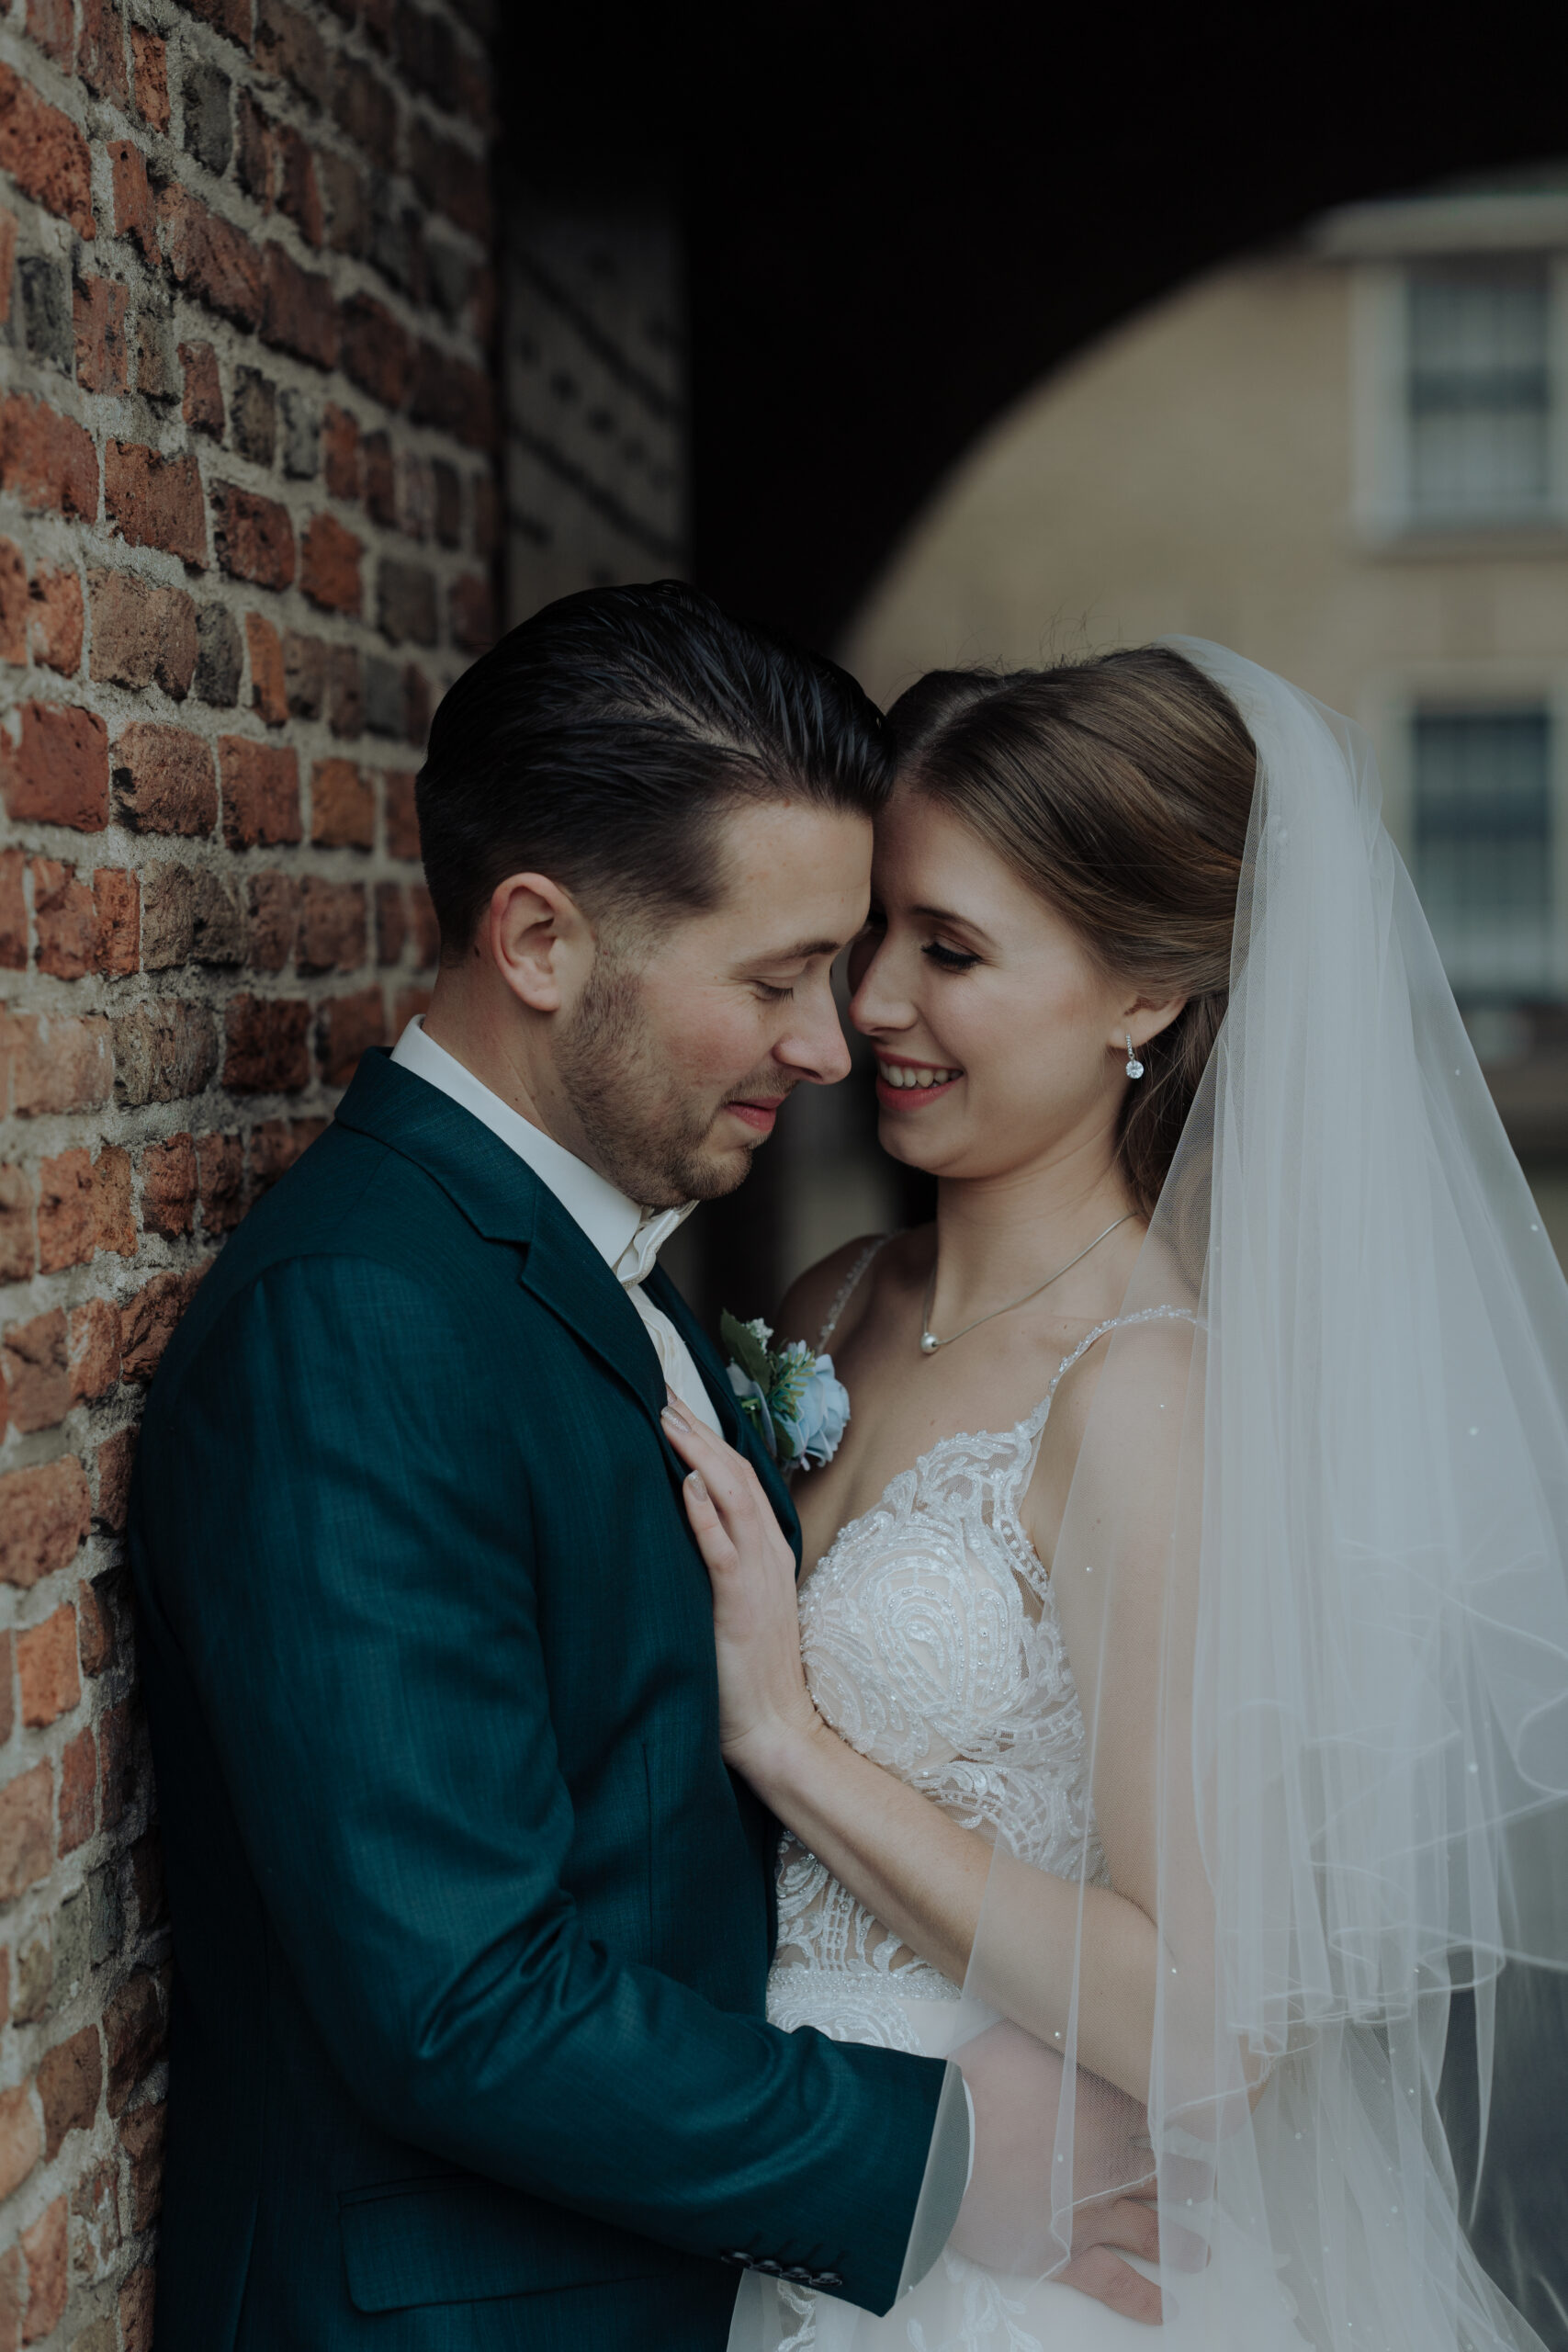 Maak-een-bruiloft-checklist!